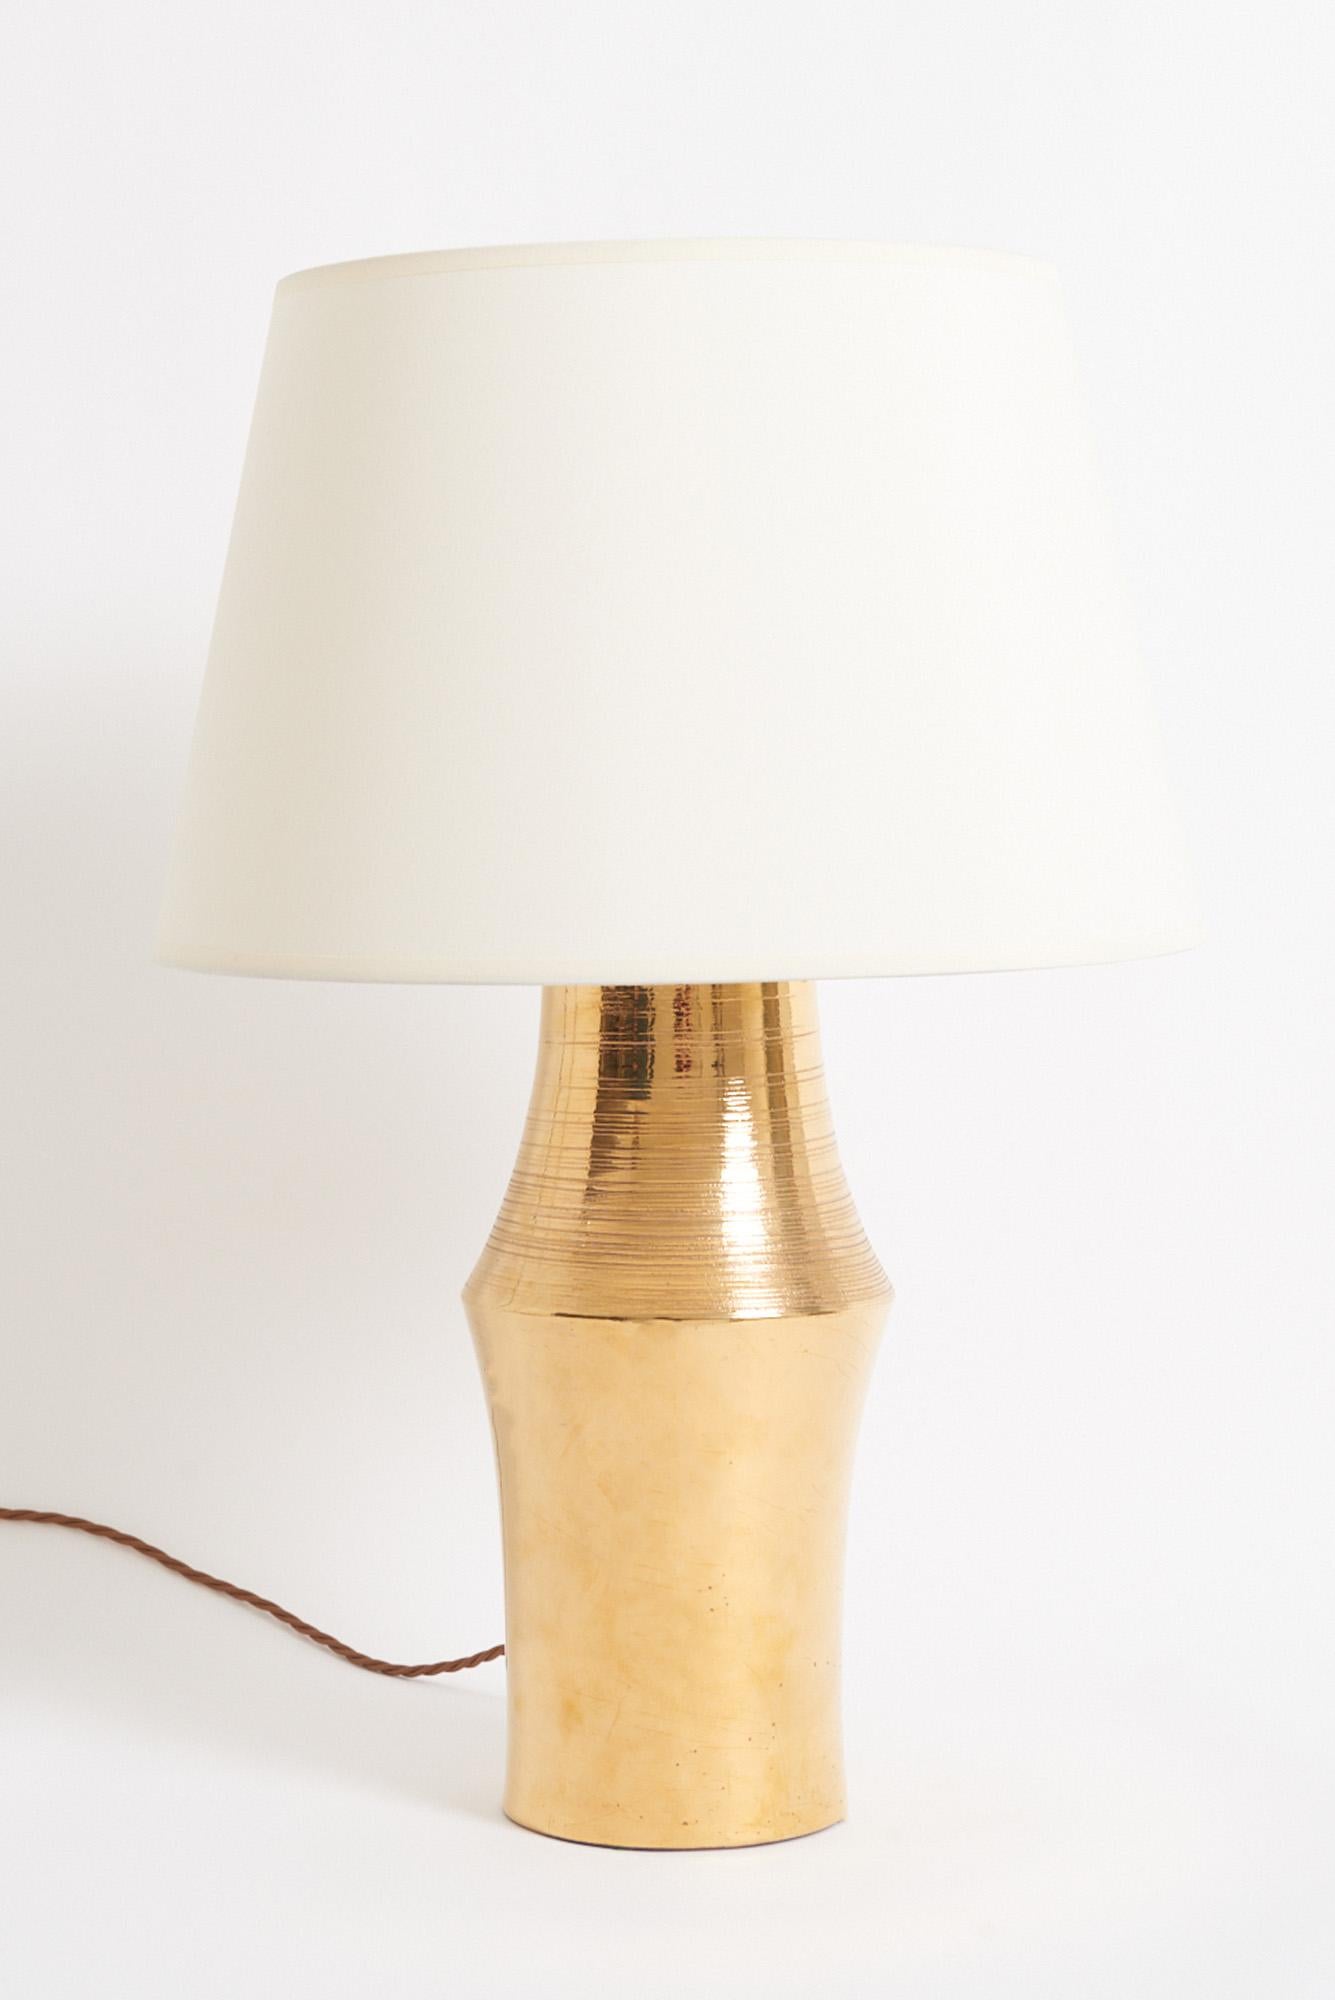 Keramik-Tischlampe mit Goldglasur, hergestellt von Bitossi Italien für Miranda AB in Schweden, 1970er Jahre
Mit dem Schirm: 59 cm Höhe und 41 cm Durchmesser 
Nur Lampenfuß: 41 cm Höhe und 19 cm Durchmesser